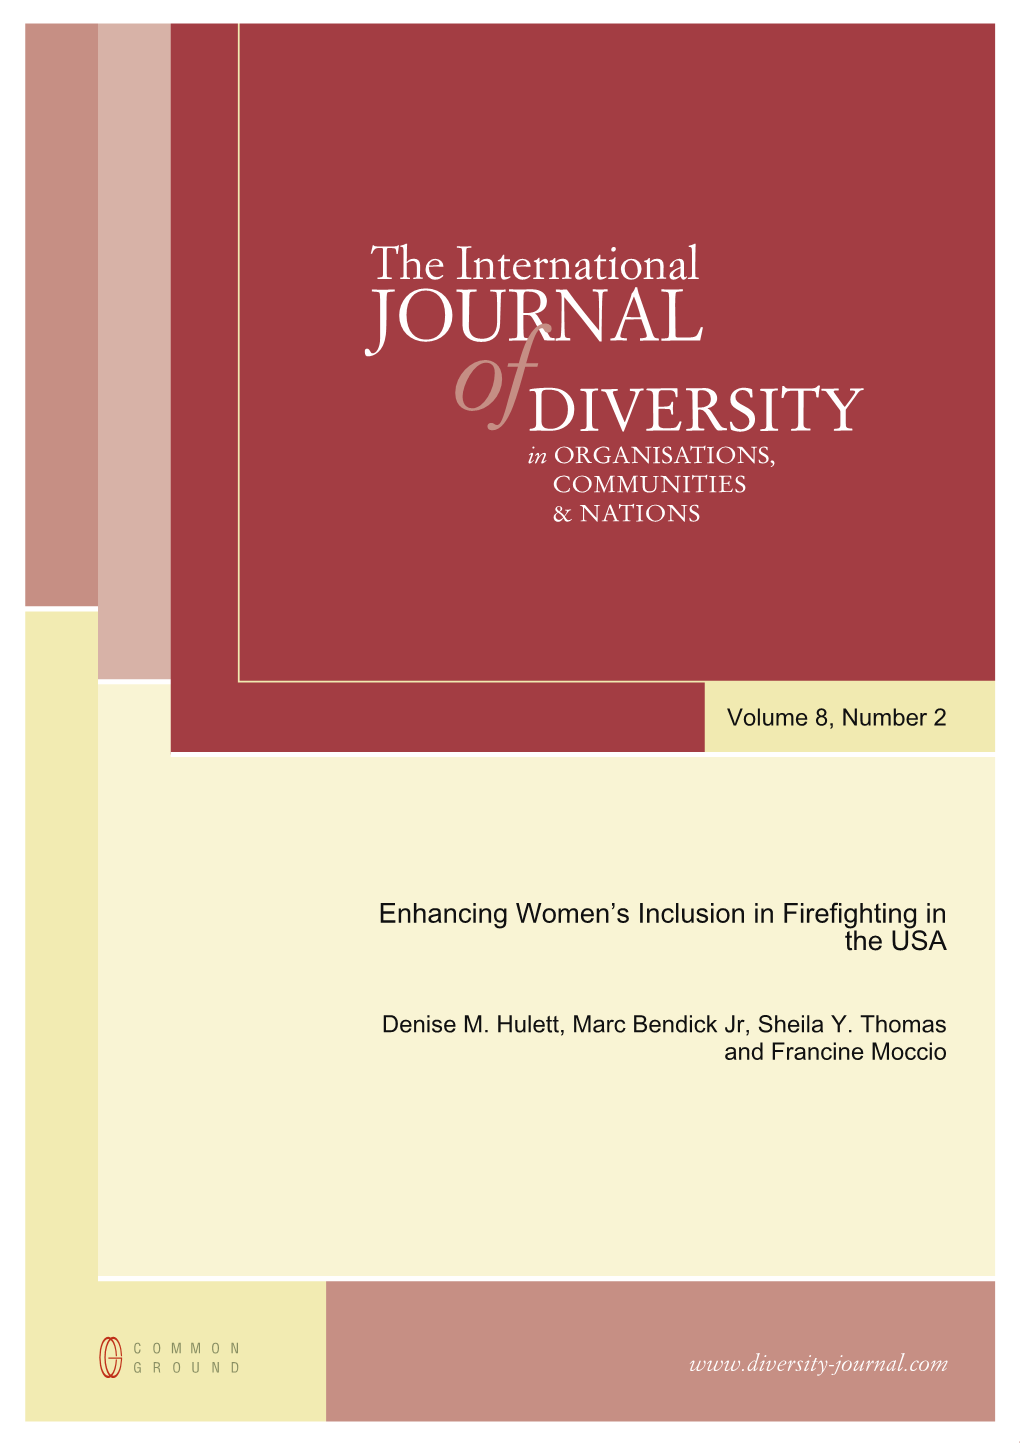 Female Firefighters in Internat Journal of Diversity.Pdf